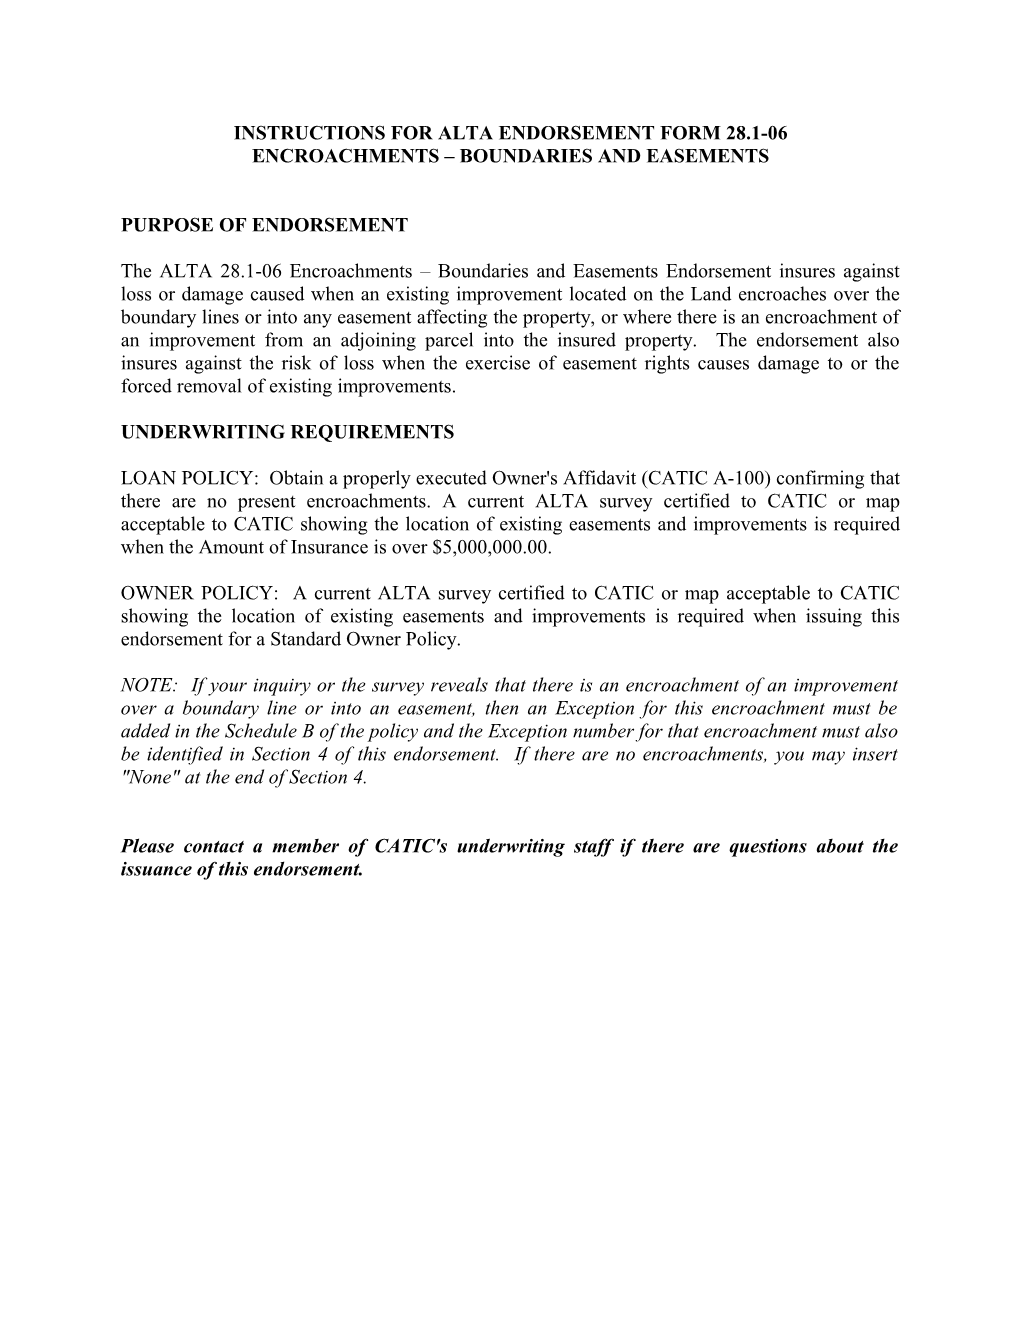 Instructions for Alta Endorsement Form 28.1-06